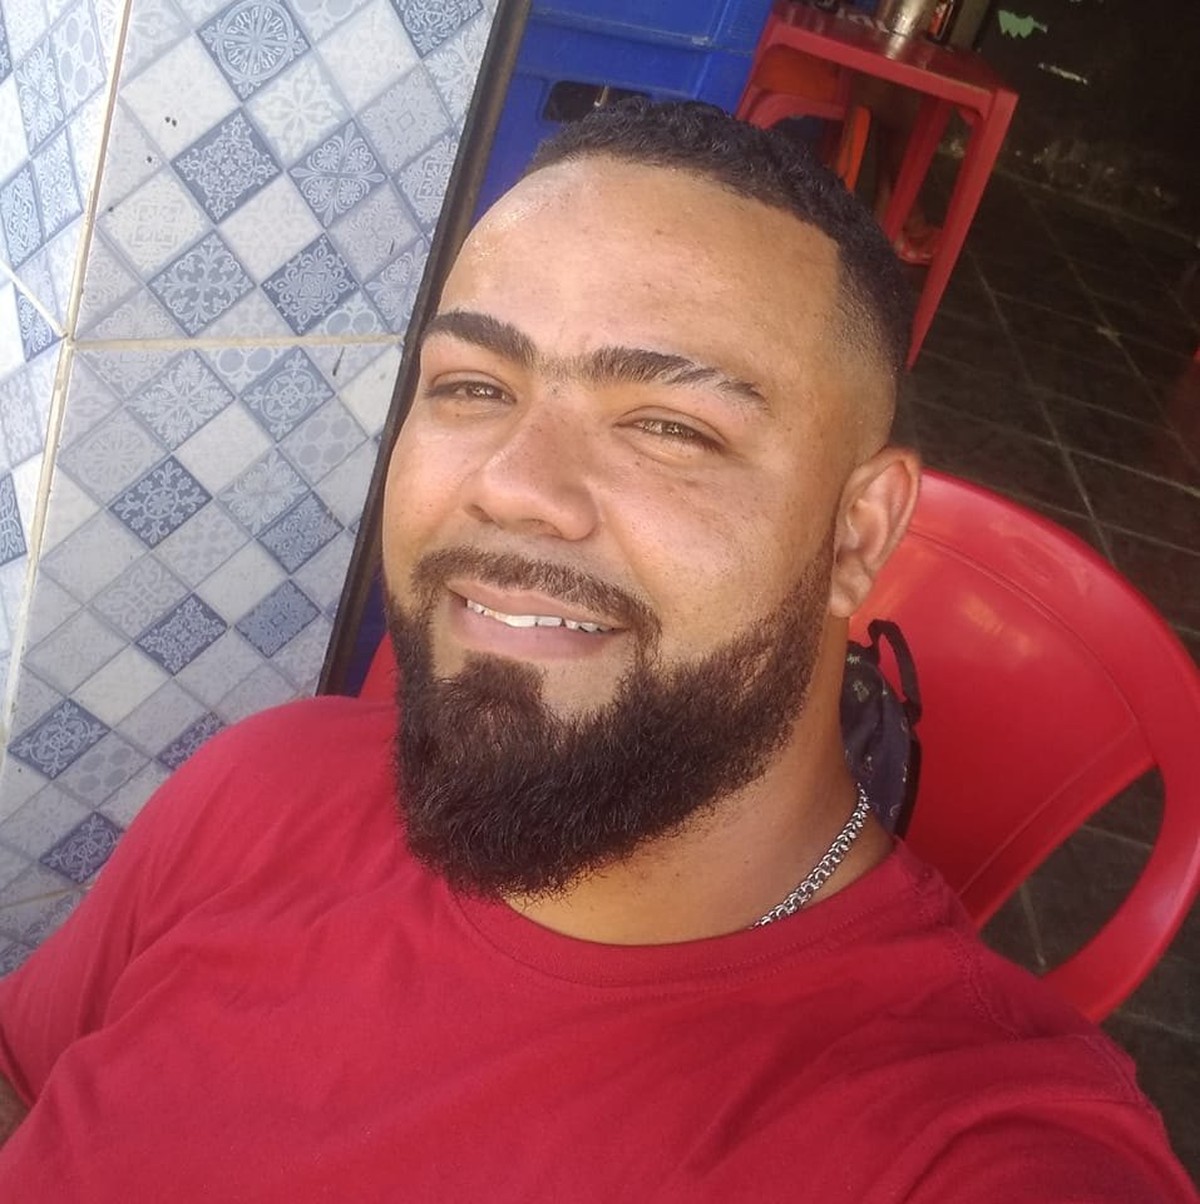 Pintor é morto a facadas na frente dos filhos; família diz que assassino era amigo de infância | Rio